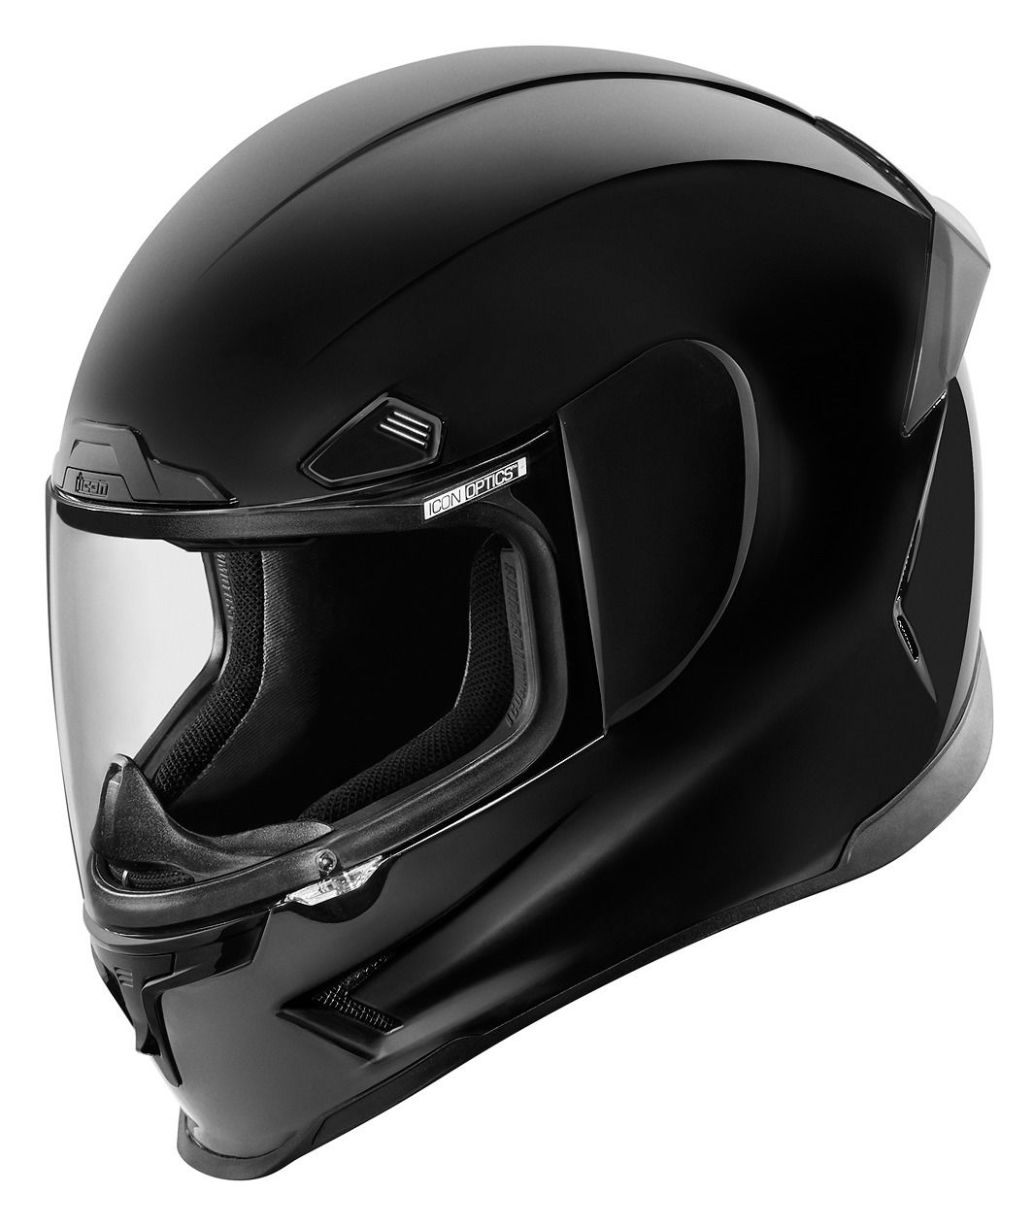 Airframe Helmet Pro アイコン ライダー フルフェイスヘルメット バイク フルフェイスヘルメット Icon Pro ツーリングにも 3xlまで かっこいい レーシング 米国人気no 1バイクウェア ブランドicon アイコン のヘルメットを 当店しか扱っていないモデル も含め販売